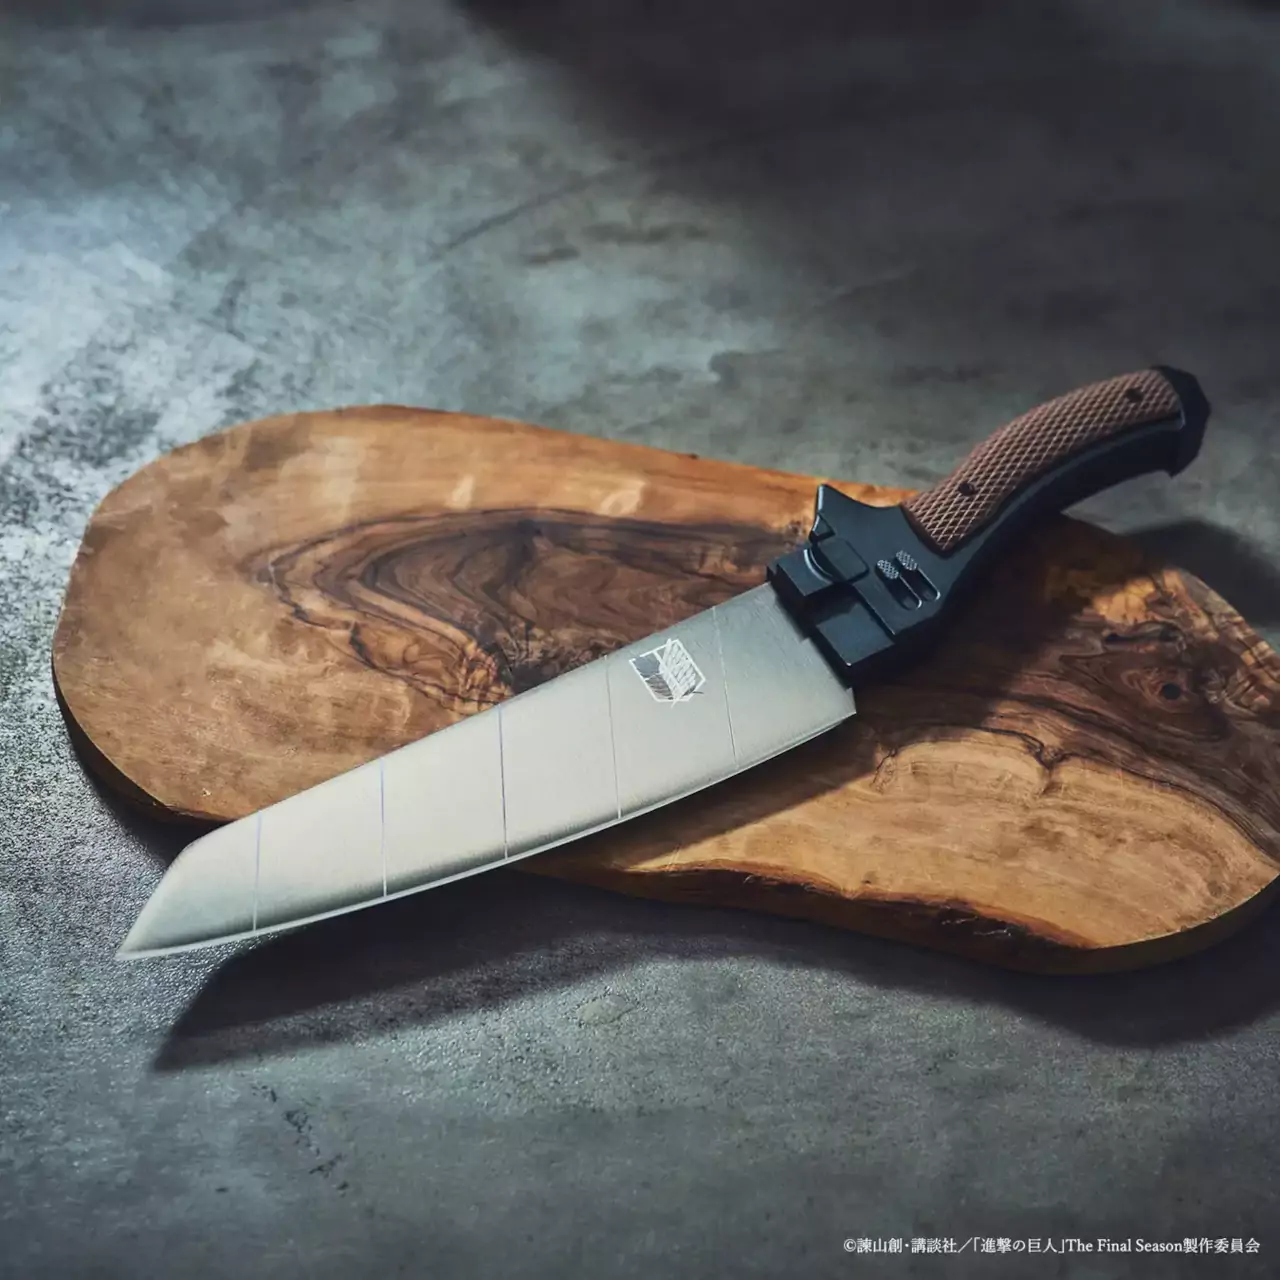 Attack on Titan: Vuélvete en un miembro de las Survey Corps con este cuchillo de cocina oficial